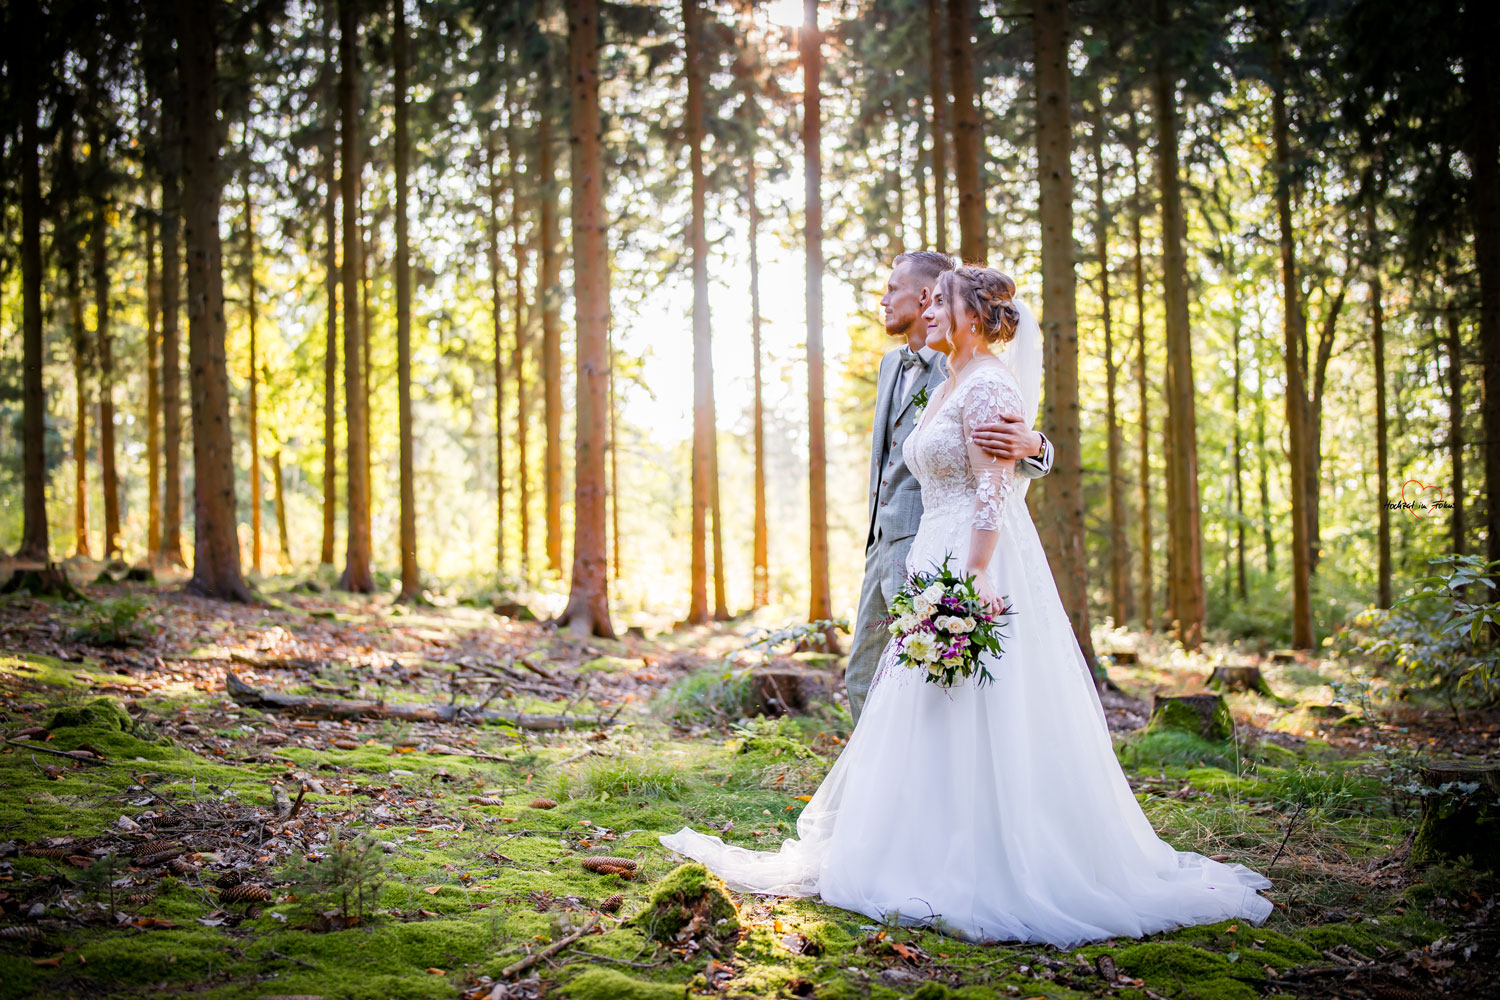 Hochzeitspaar blickt in die gleiche Richtung, romantischer Wald in Callenberg